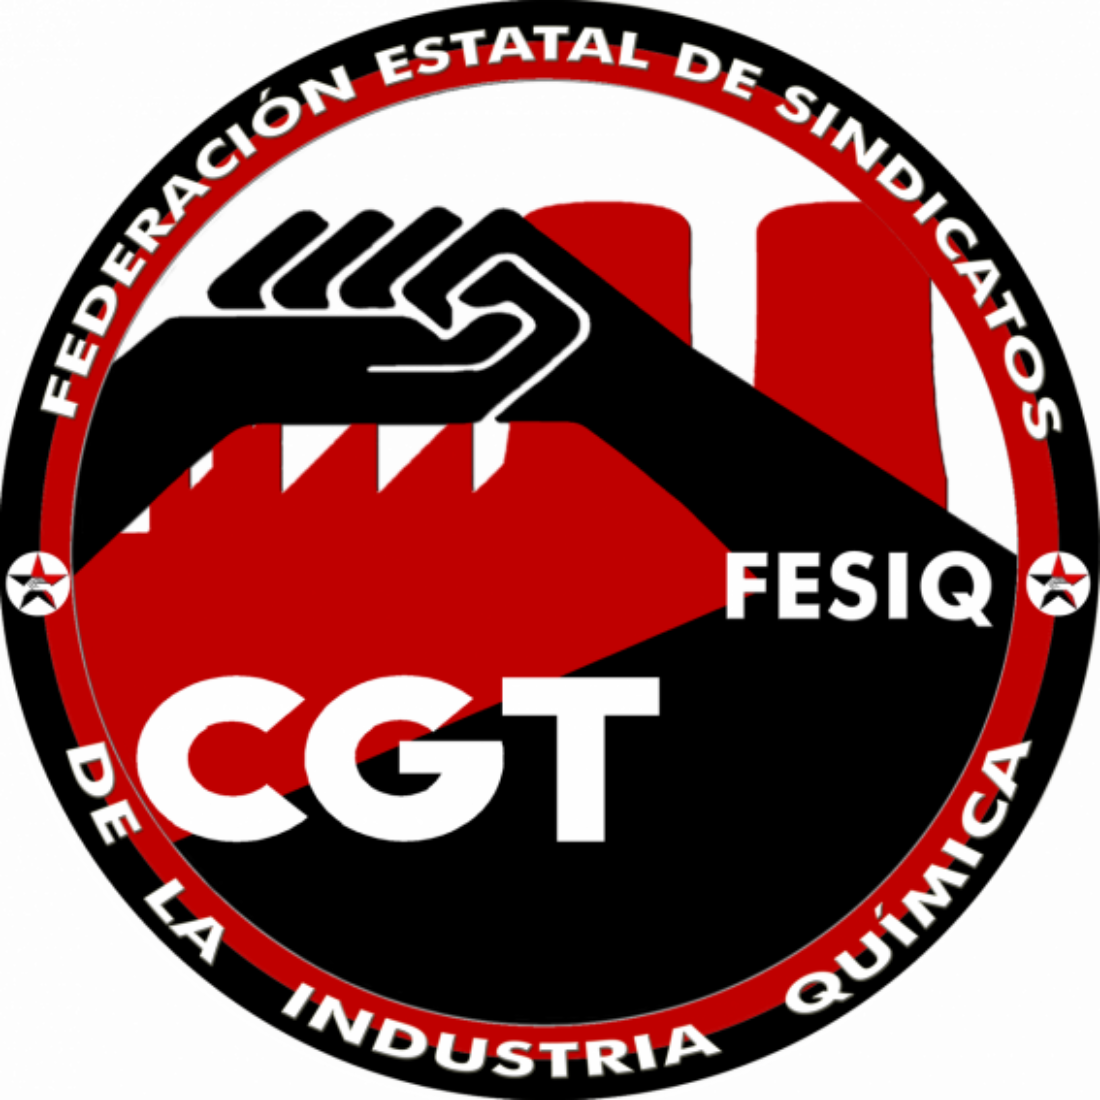 La Petroquímica de Tarragona convoca huelga